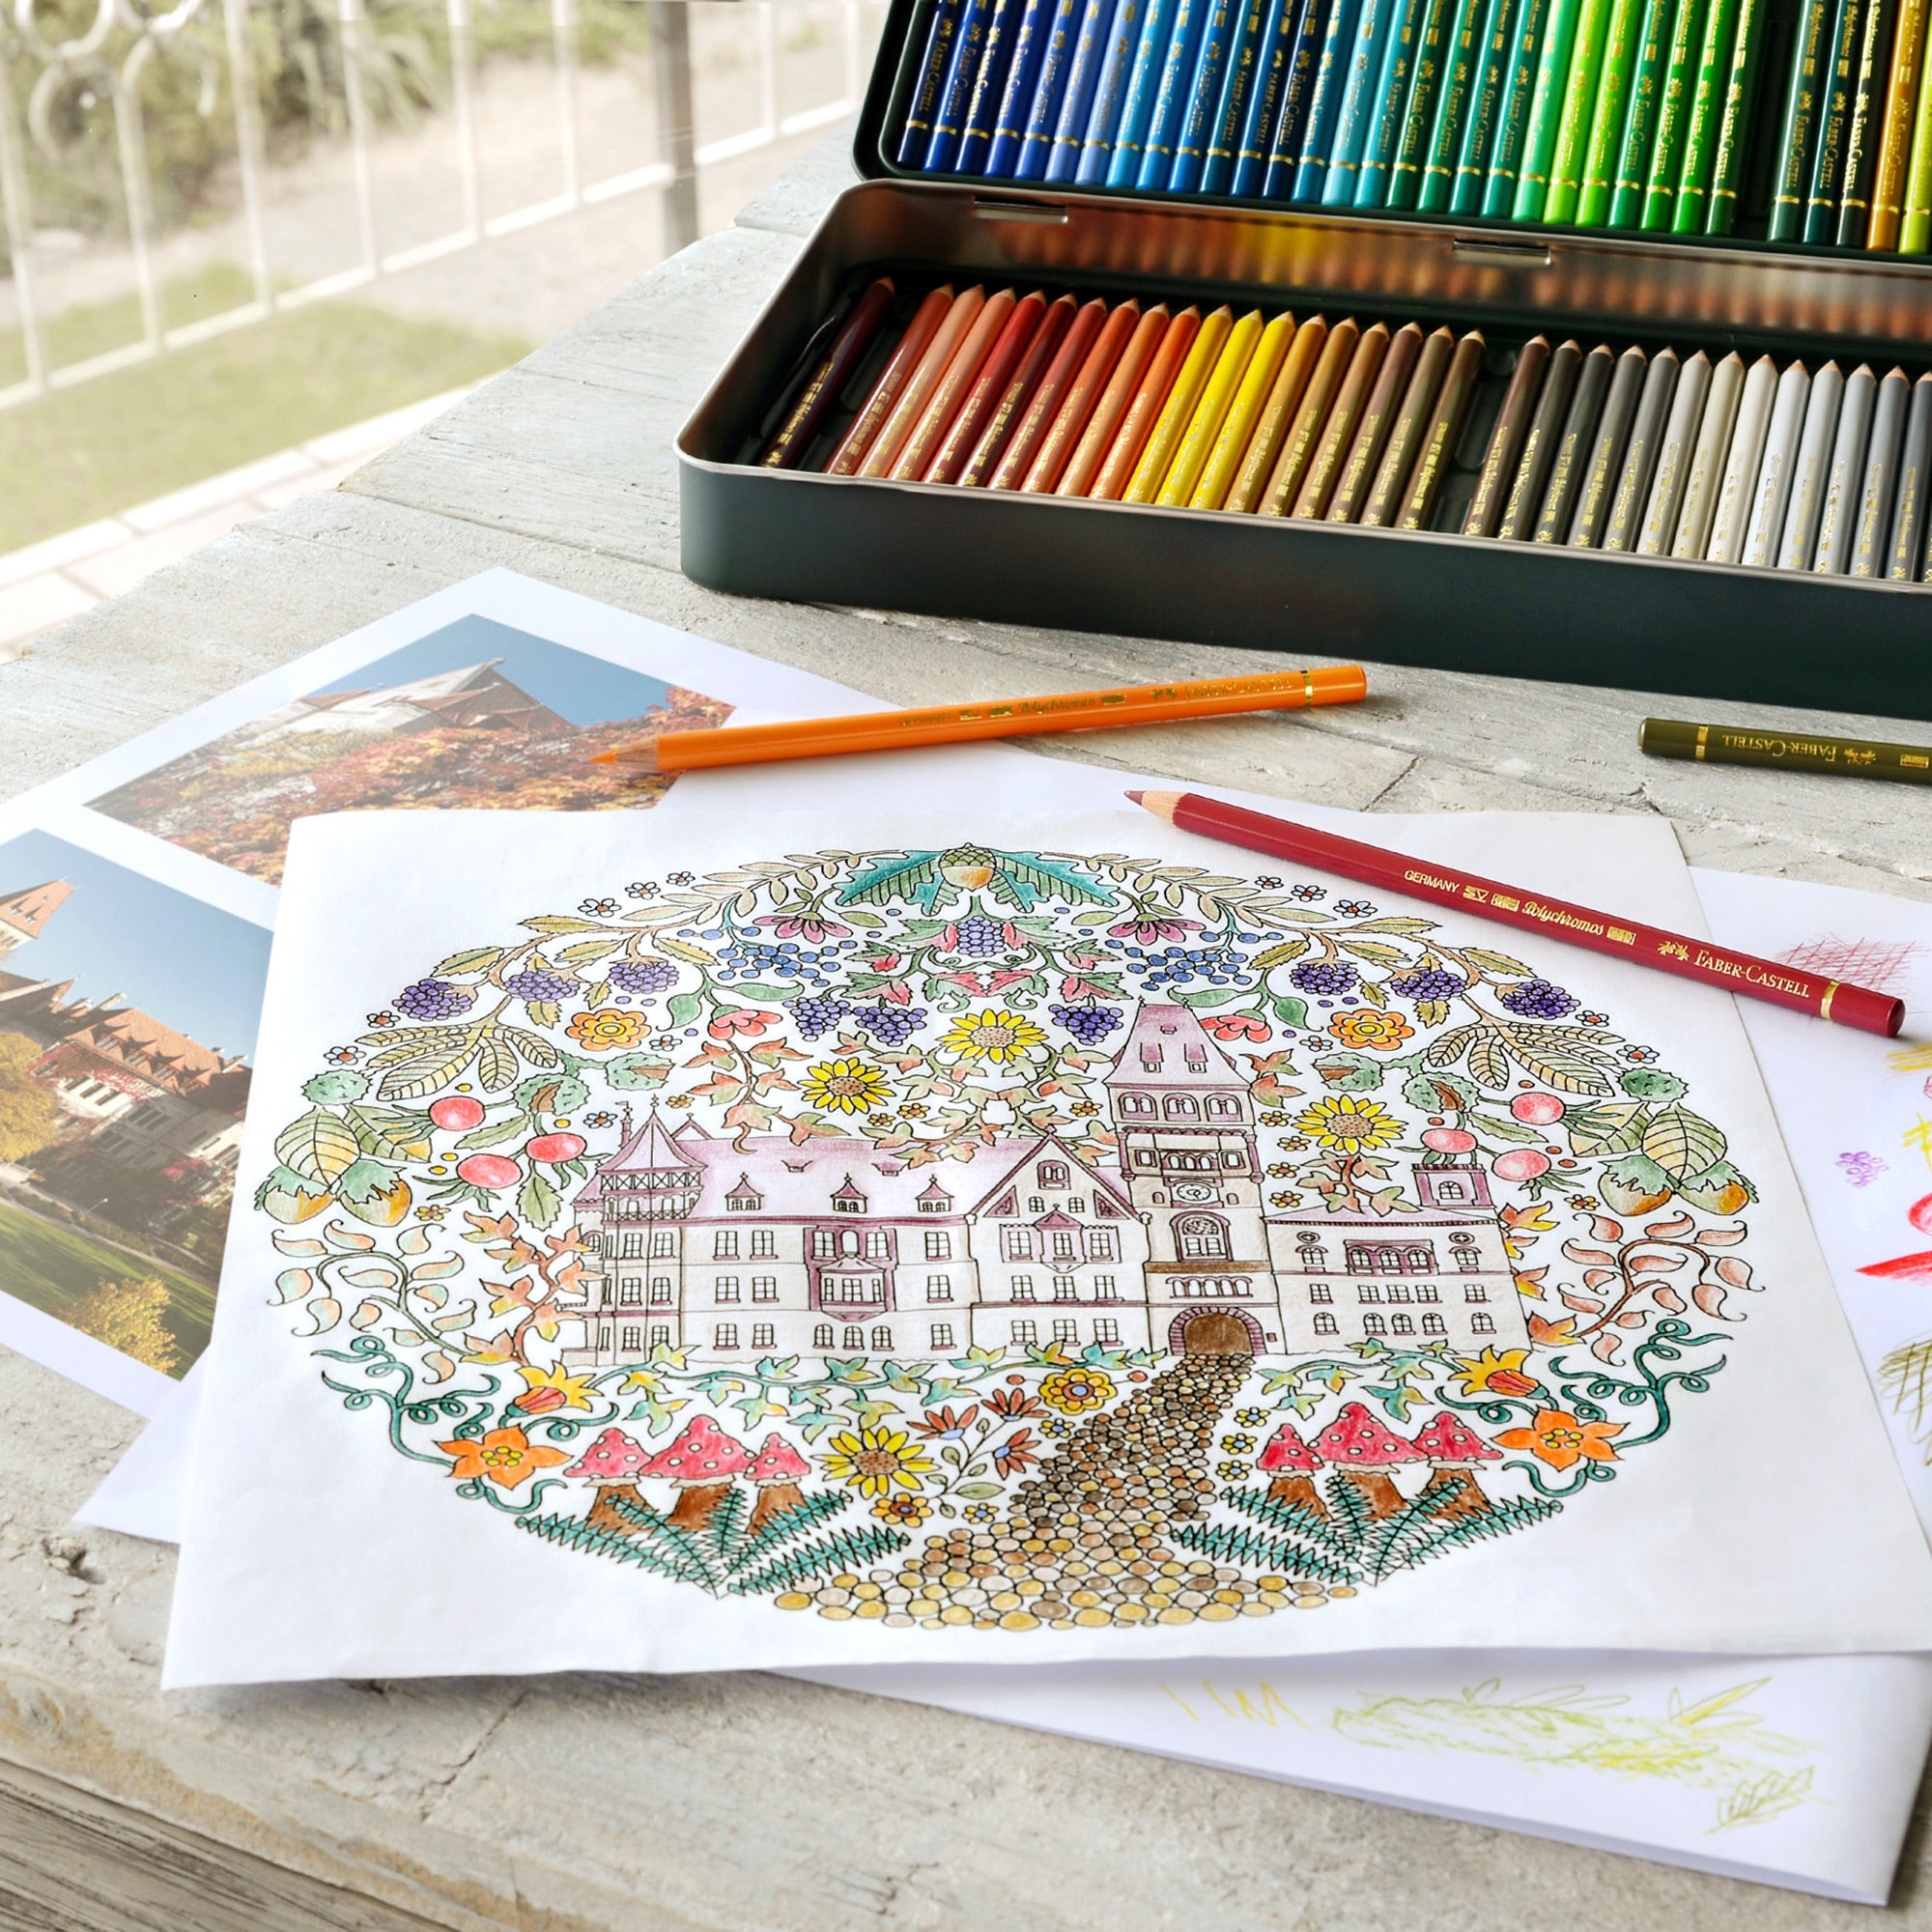 Faber-castell crayons de couleur (lot de 60) - Dessin et coloriage